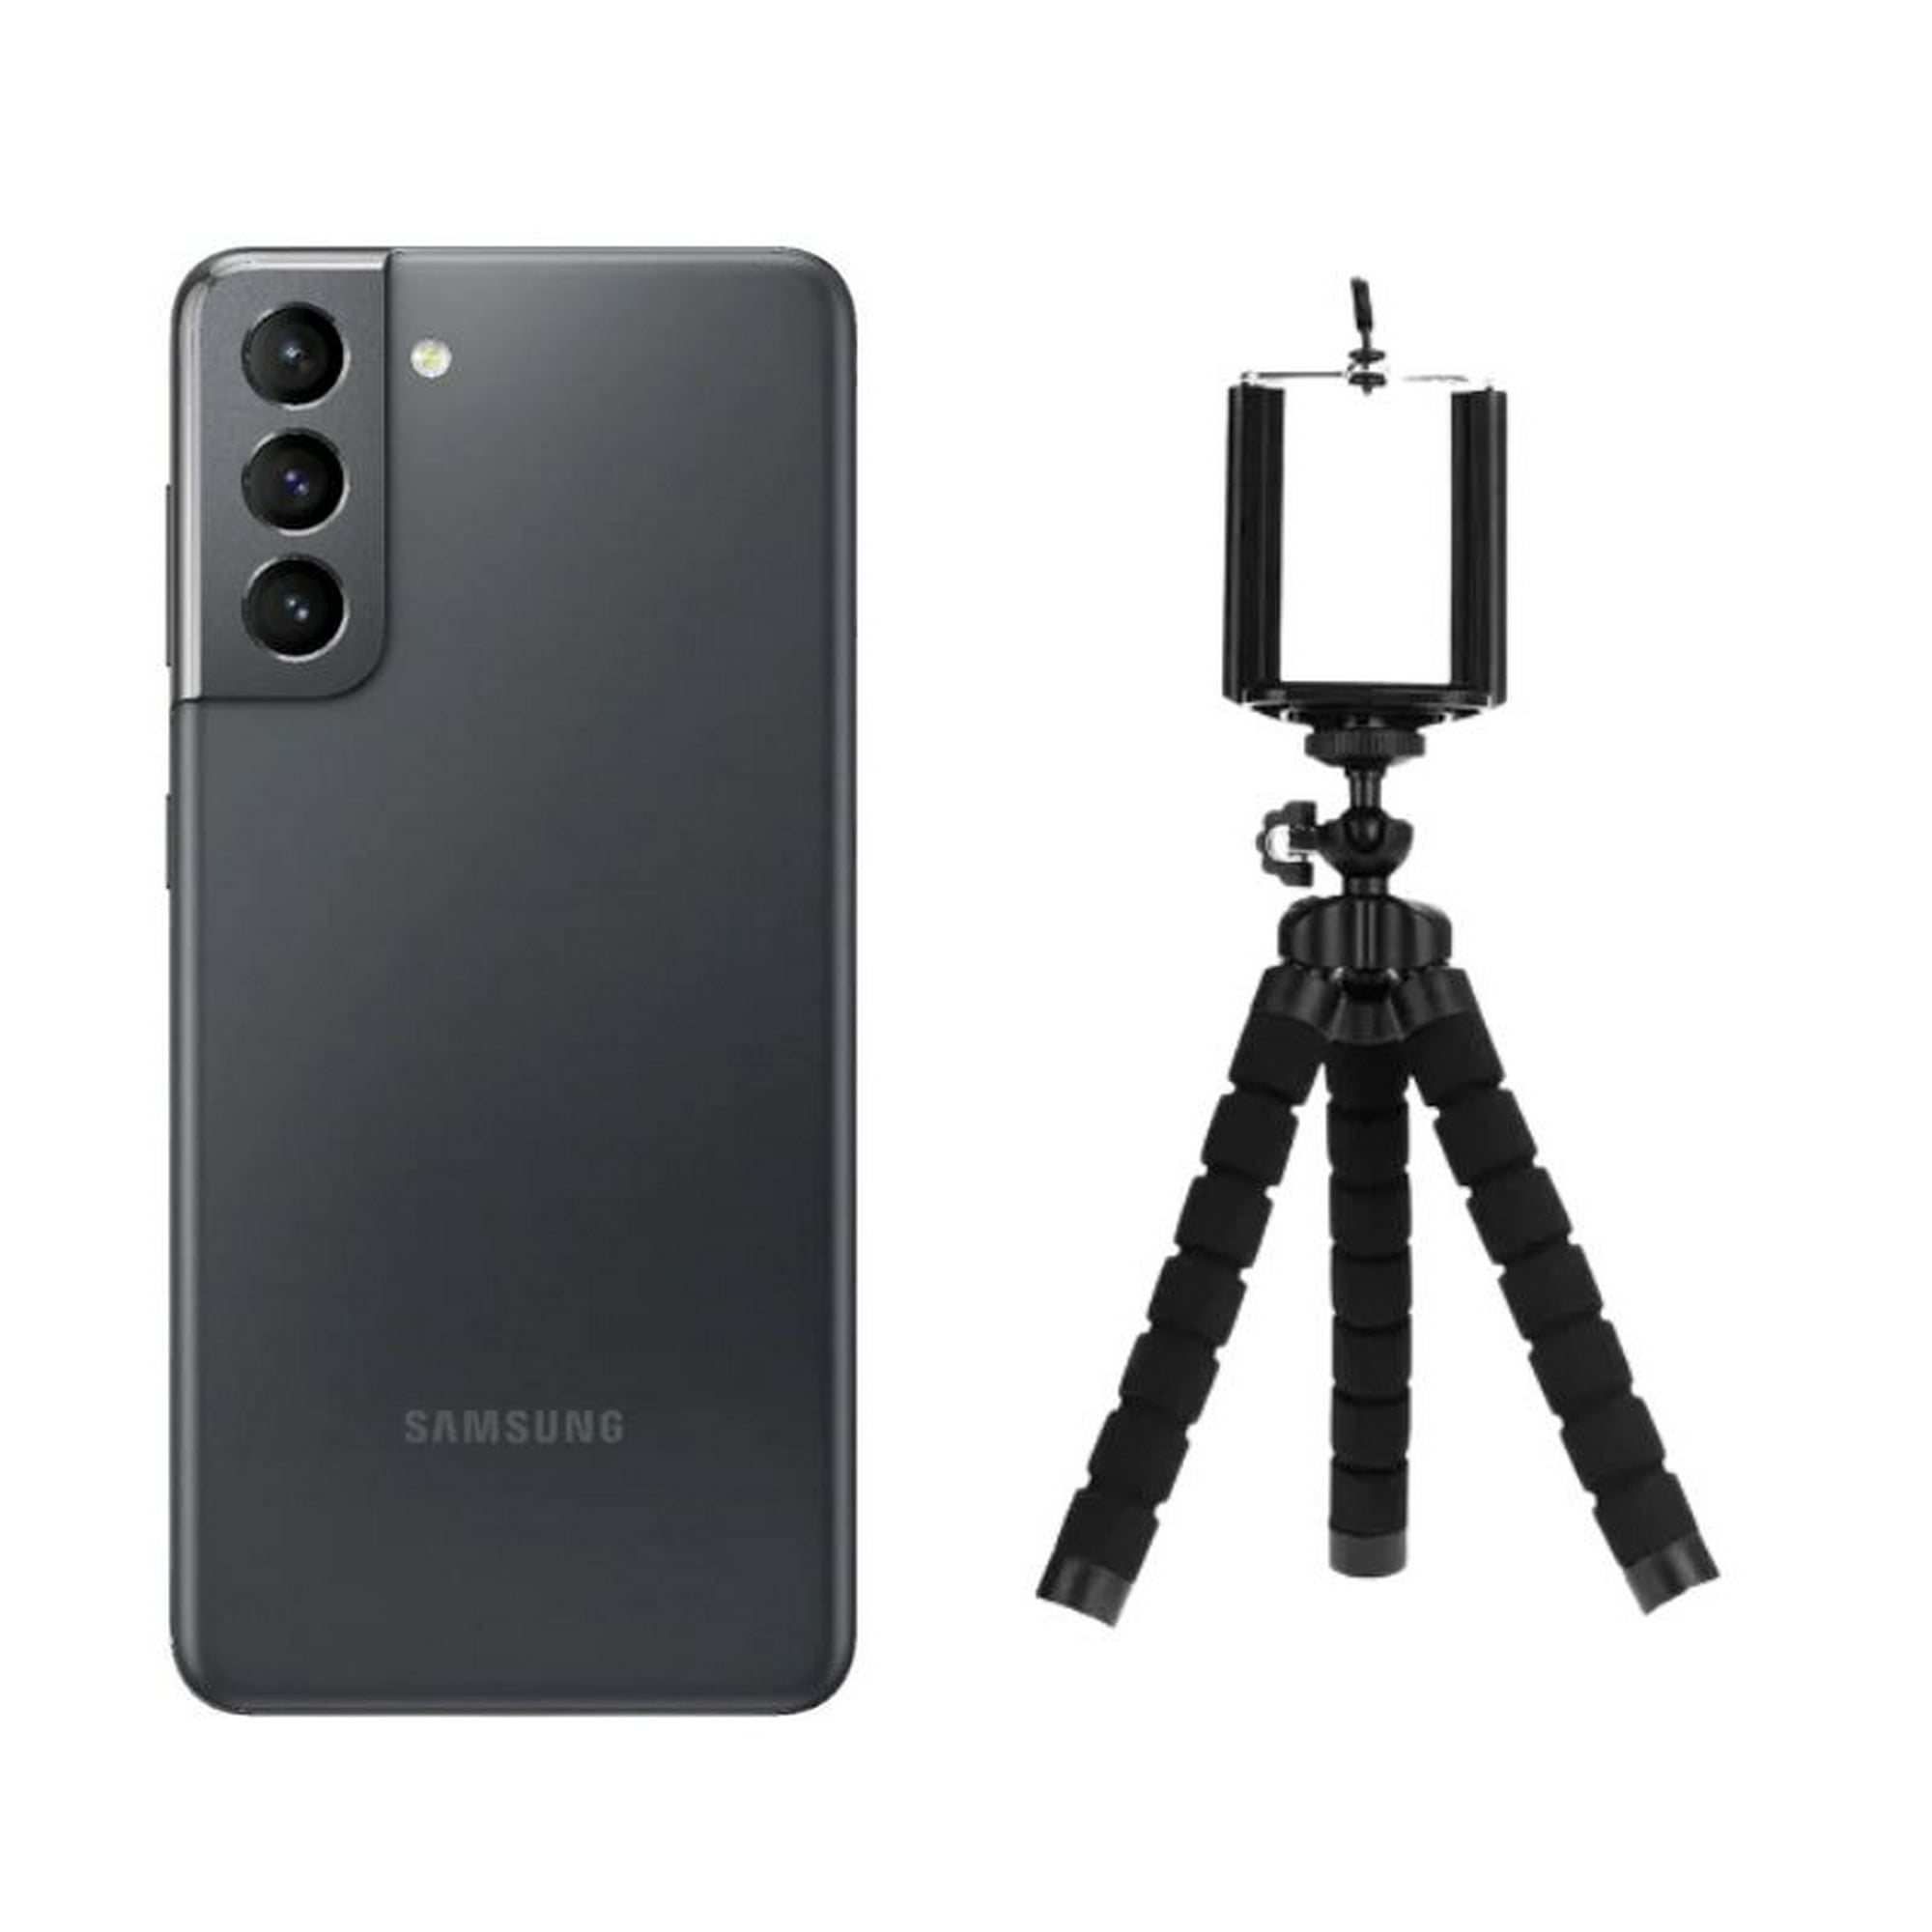 suma conjunto escalada Samsung S21 128GB Reacondicionado Gris + Trípode Samsung Galaxy S21 |  Bodega Aurrera en línea